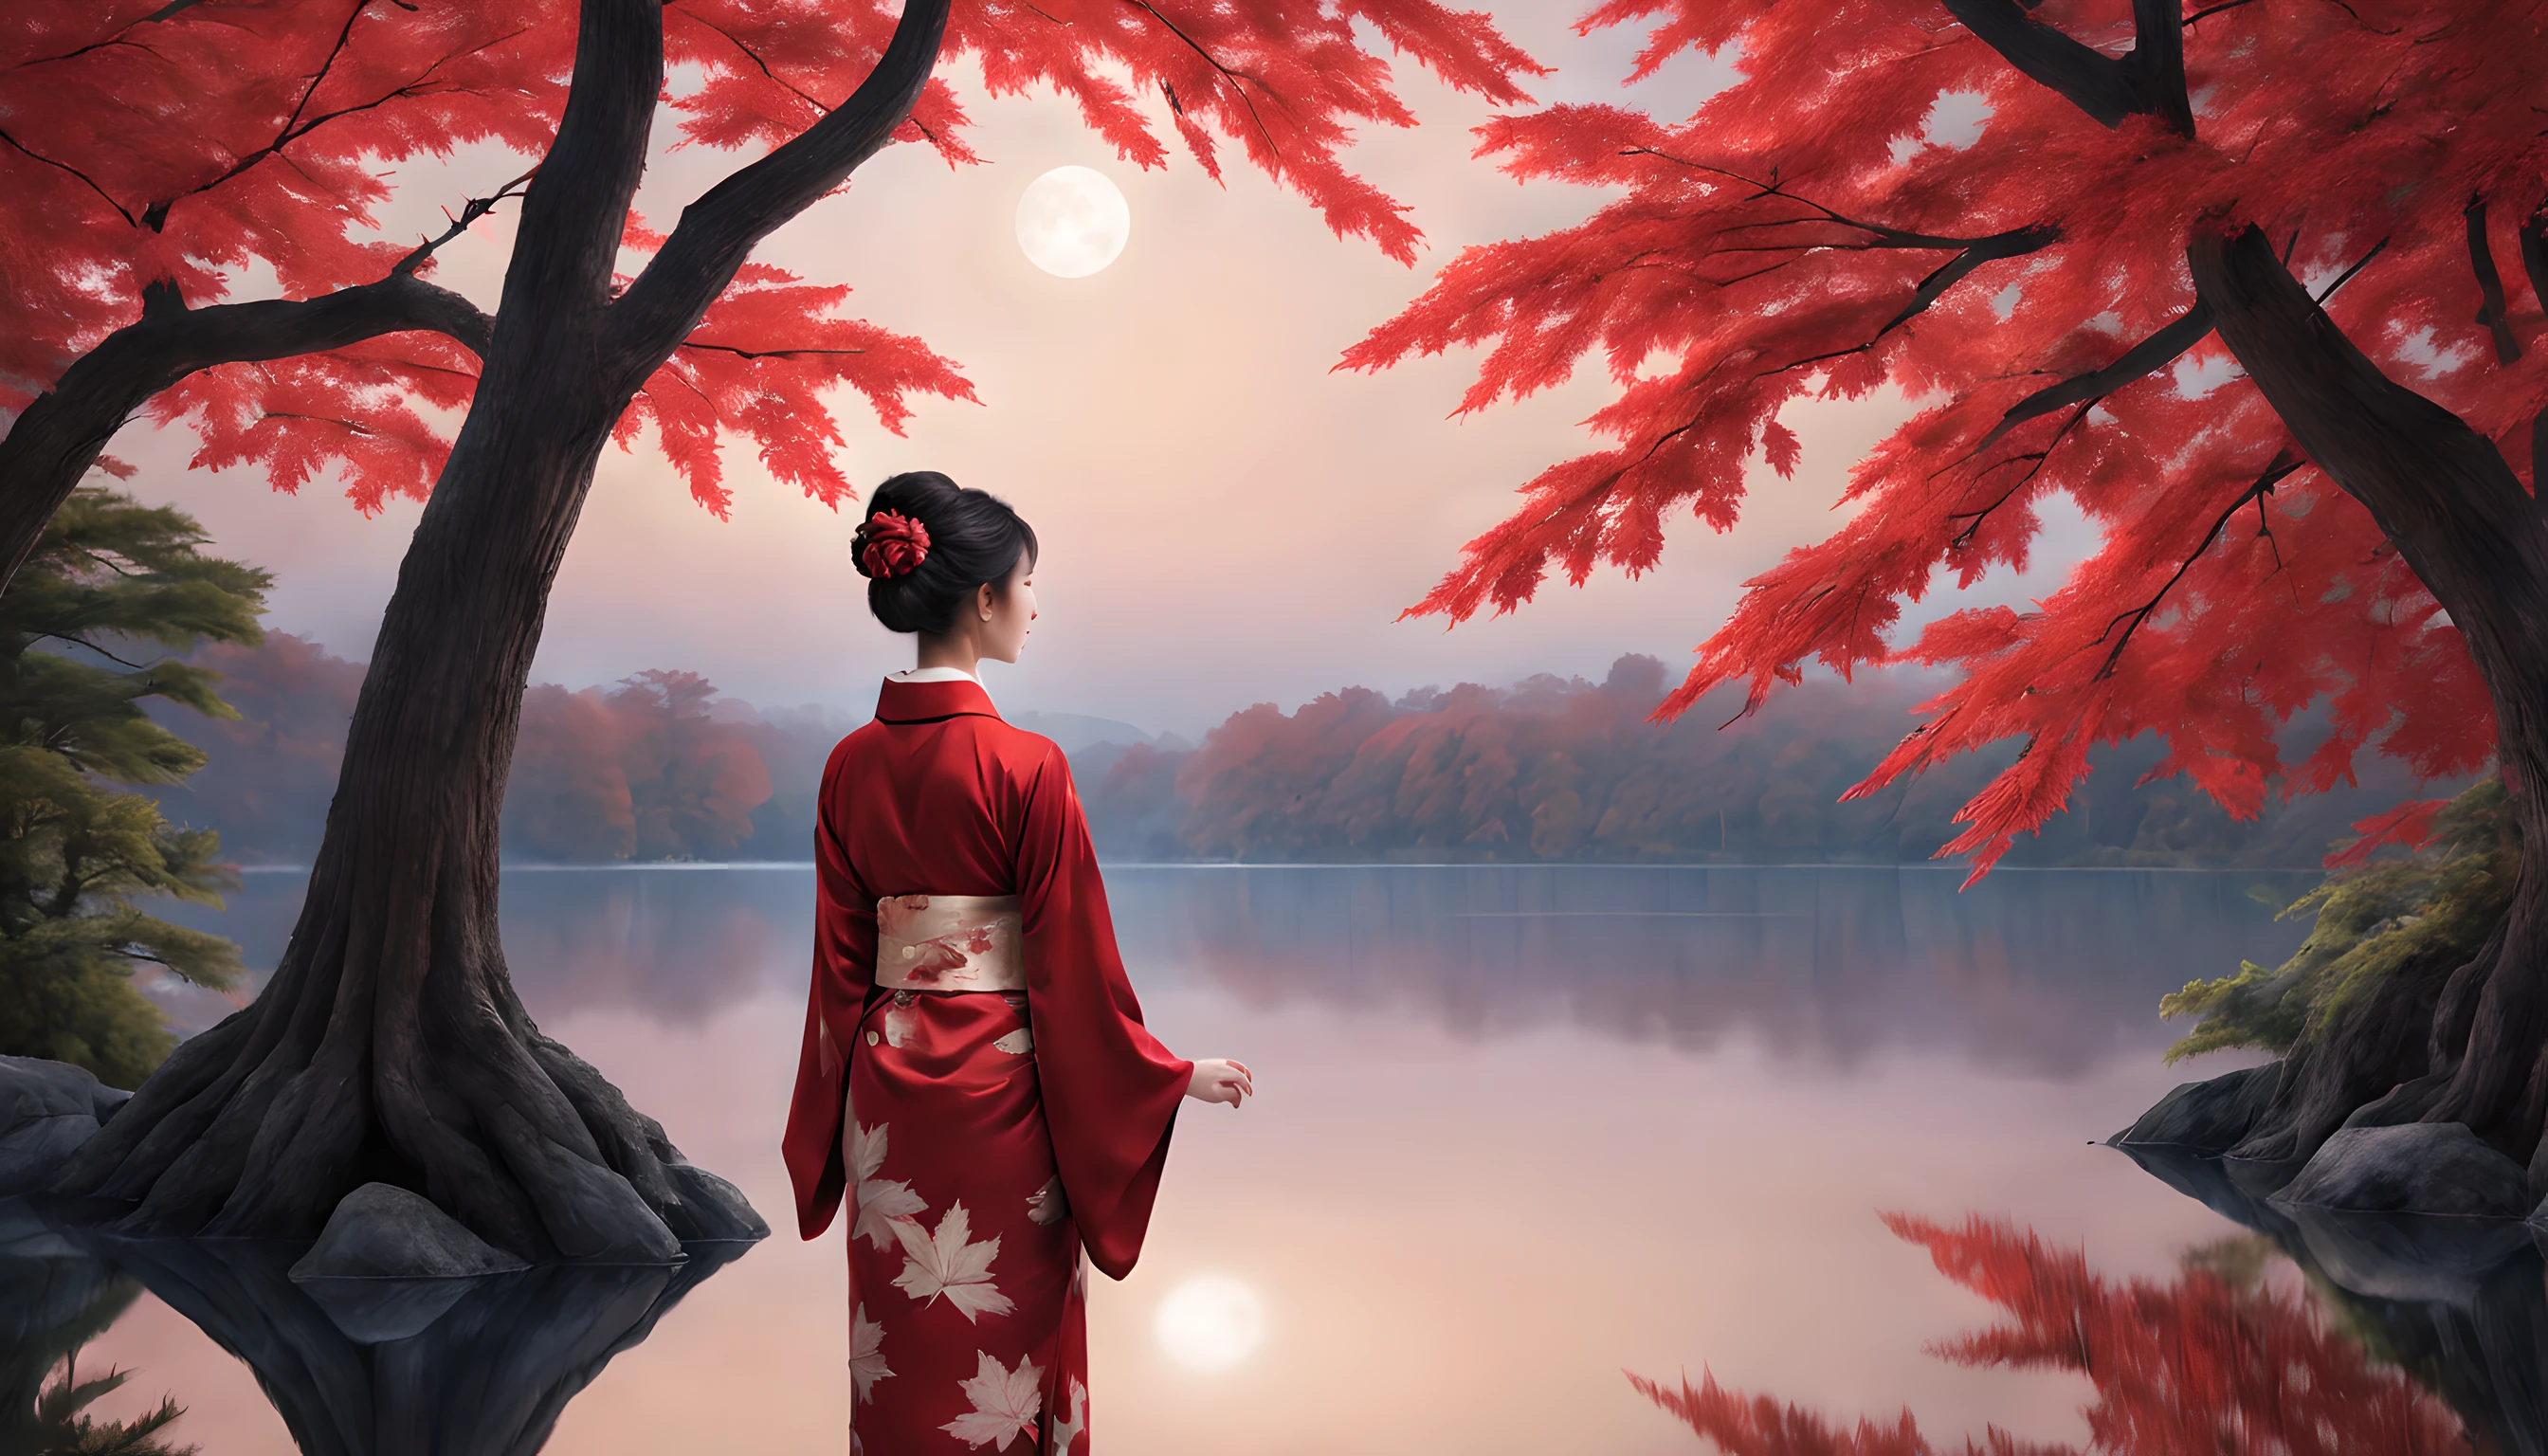 "Composez une scène nocturne captivante mettant en vedette un étang tranquille enveloppé par les teintes ardentes du feuillage d&#39;automne des feuilles d&#39;érable.. La composition doit mettre en valeur la proéminence des feuilles d&#39;érable et du majestueux érable qui se dresse à proximité..

Au premier plan, une Japonaise d&#39;une quarantaine d&#39;années se tient gracieusement, drapé dans un kimono rouge vif. Le kimono accentue son élégance, et sa beauté rayonne sous le clair de lune. Elle est une vision d&#39;une allure intemporelle, capturer l&#39;essence de la saison.

La femme regarde l&#39;étang scintillant, où le reflet des feuilles d&#39;érable danse à la surface de l&#39;eau. Son expression est celle d&#39;une contemplation sereine, alors qu&#39;elle se plonge dans la beauté tranquille de la nuit.

L&#39;arrière-plan met en valeur le magnifique érable, ses branches ornées de feuilles resplendissantes qui semblent capter le clair de lune. L&#39;étang reflète la scène éthérée, ajoutant à l&#39;enchantement du moment.

La composition globale doit créer un sentiment de sérénité et de respect pour la beauté de la nature.. Assurez-vous que la beauté captivante de la femme et l&#39;éclat des feuilles d&#39;érable occupent une place centrale dans ce tableau automnal fascinant.."